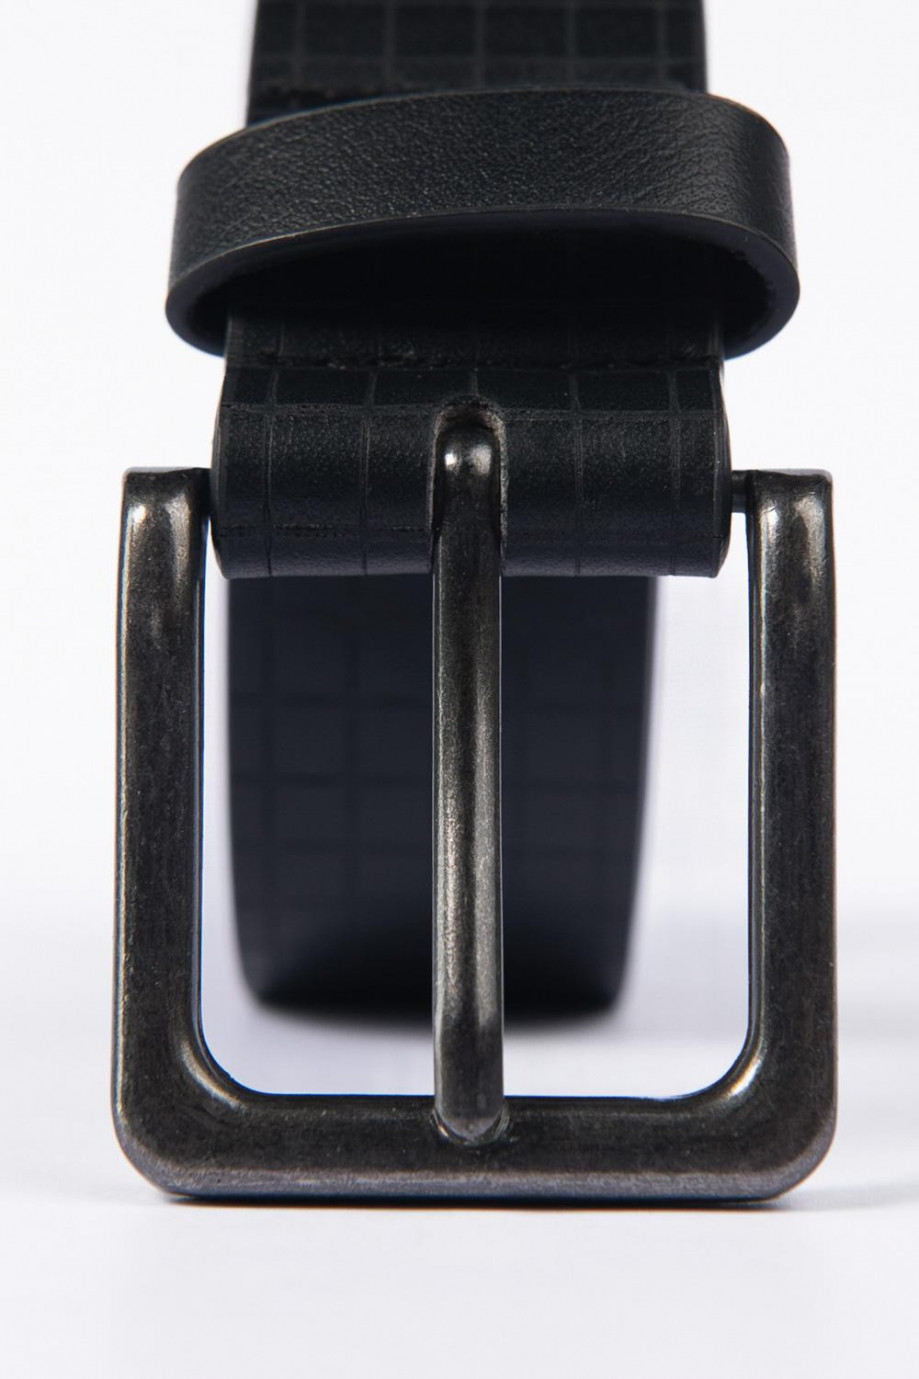 Cinturón negro con hebilla metálica y textura de cuadros